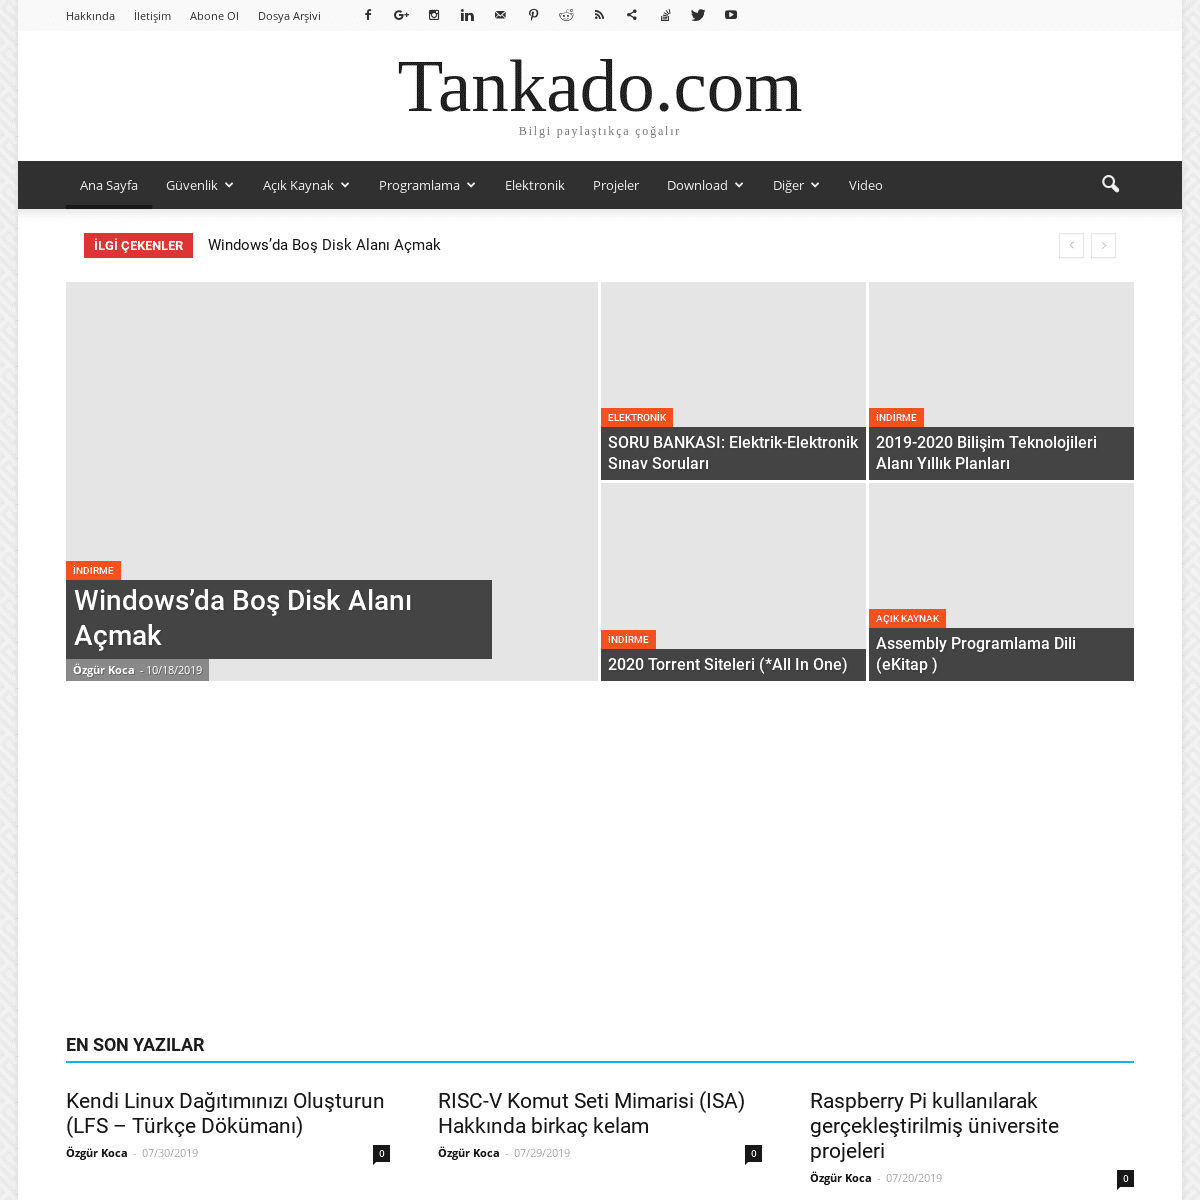 A complete backup of tankado.com